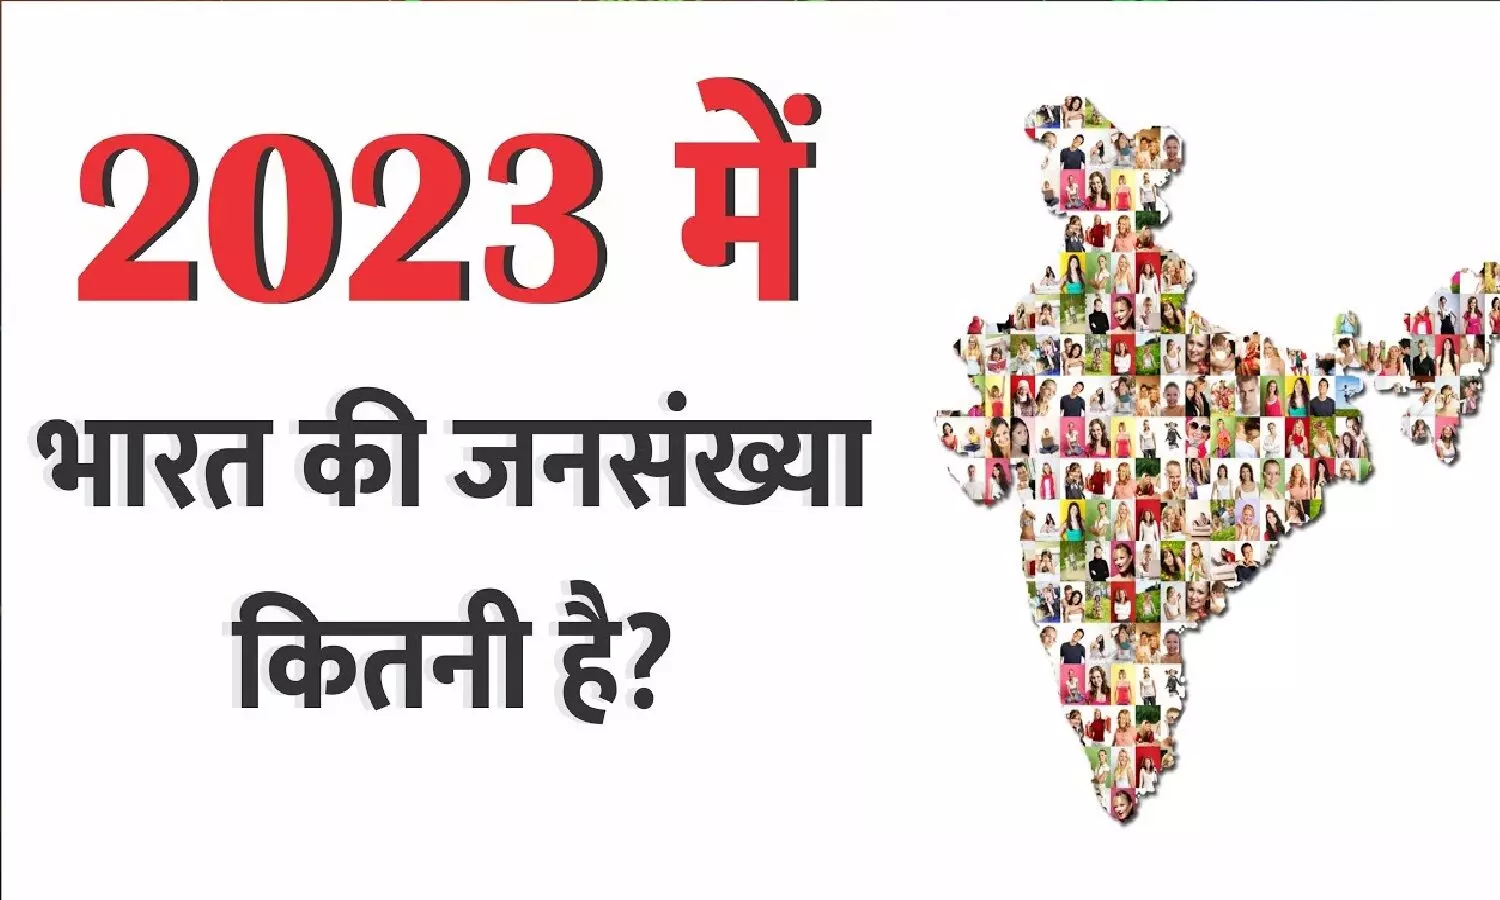 भारत की आबादी 2023: पॉपुलेशन के मामले में चीन अभी भी नंबर 1 पर! भारत दूसरा सबसे बड़ी आबादी वाला देश